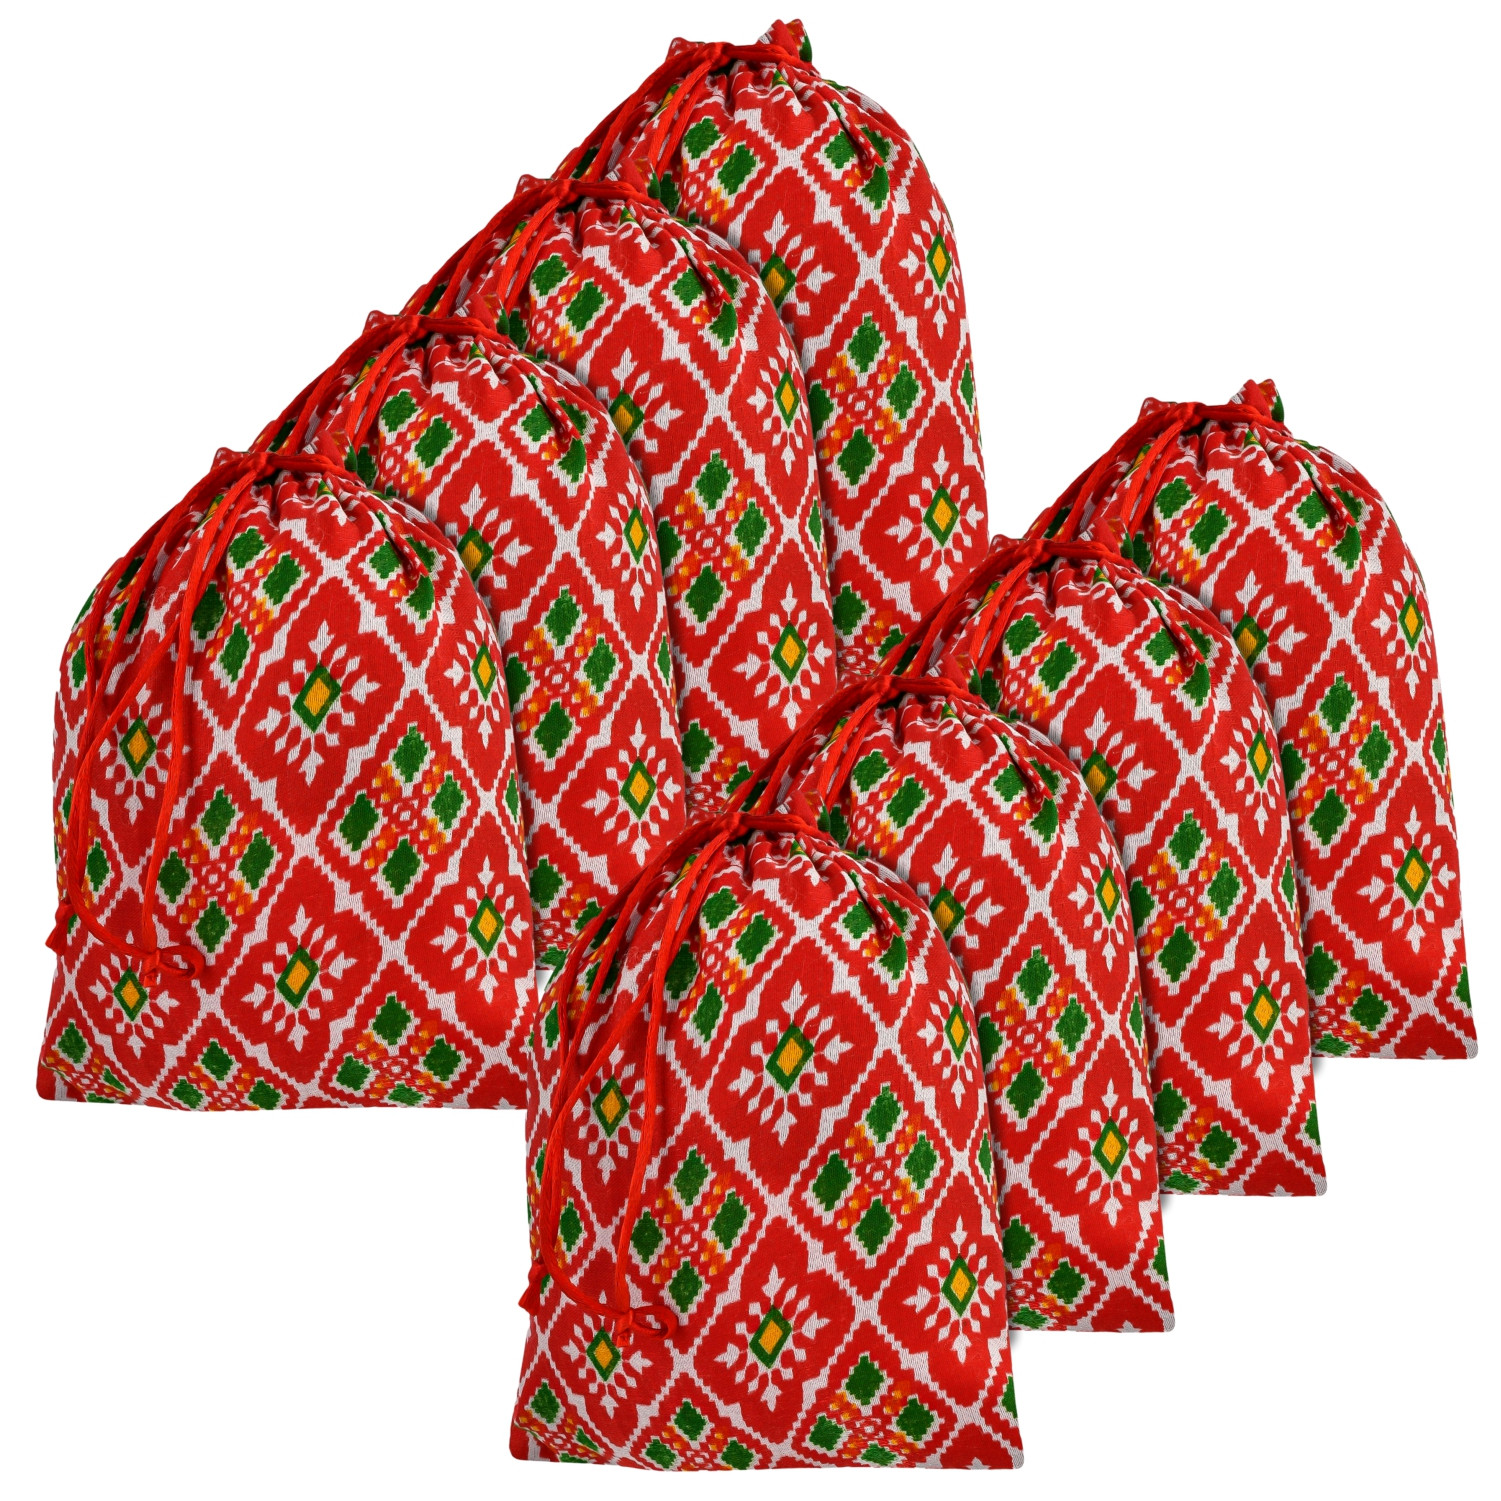 Kuber Industries Potli | Silk Wedding Potli | Drawstring Closure Potli | Wallet Potli | Christmas Gift Potli | Baby Shower Potli | Medium-Patola-Print Potli | 7x9 Inch |Red